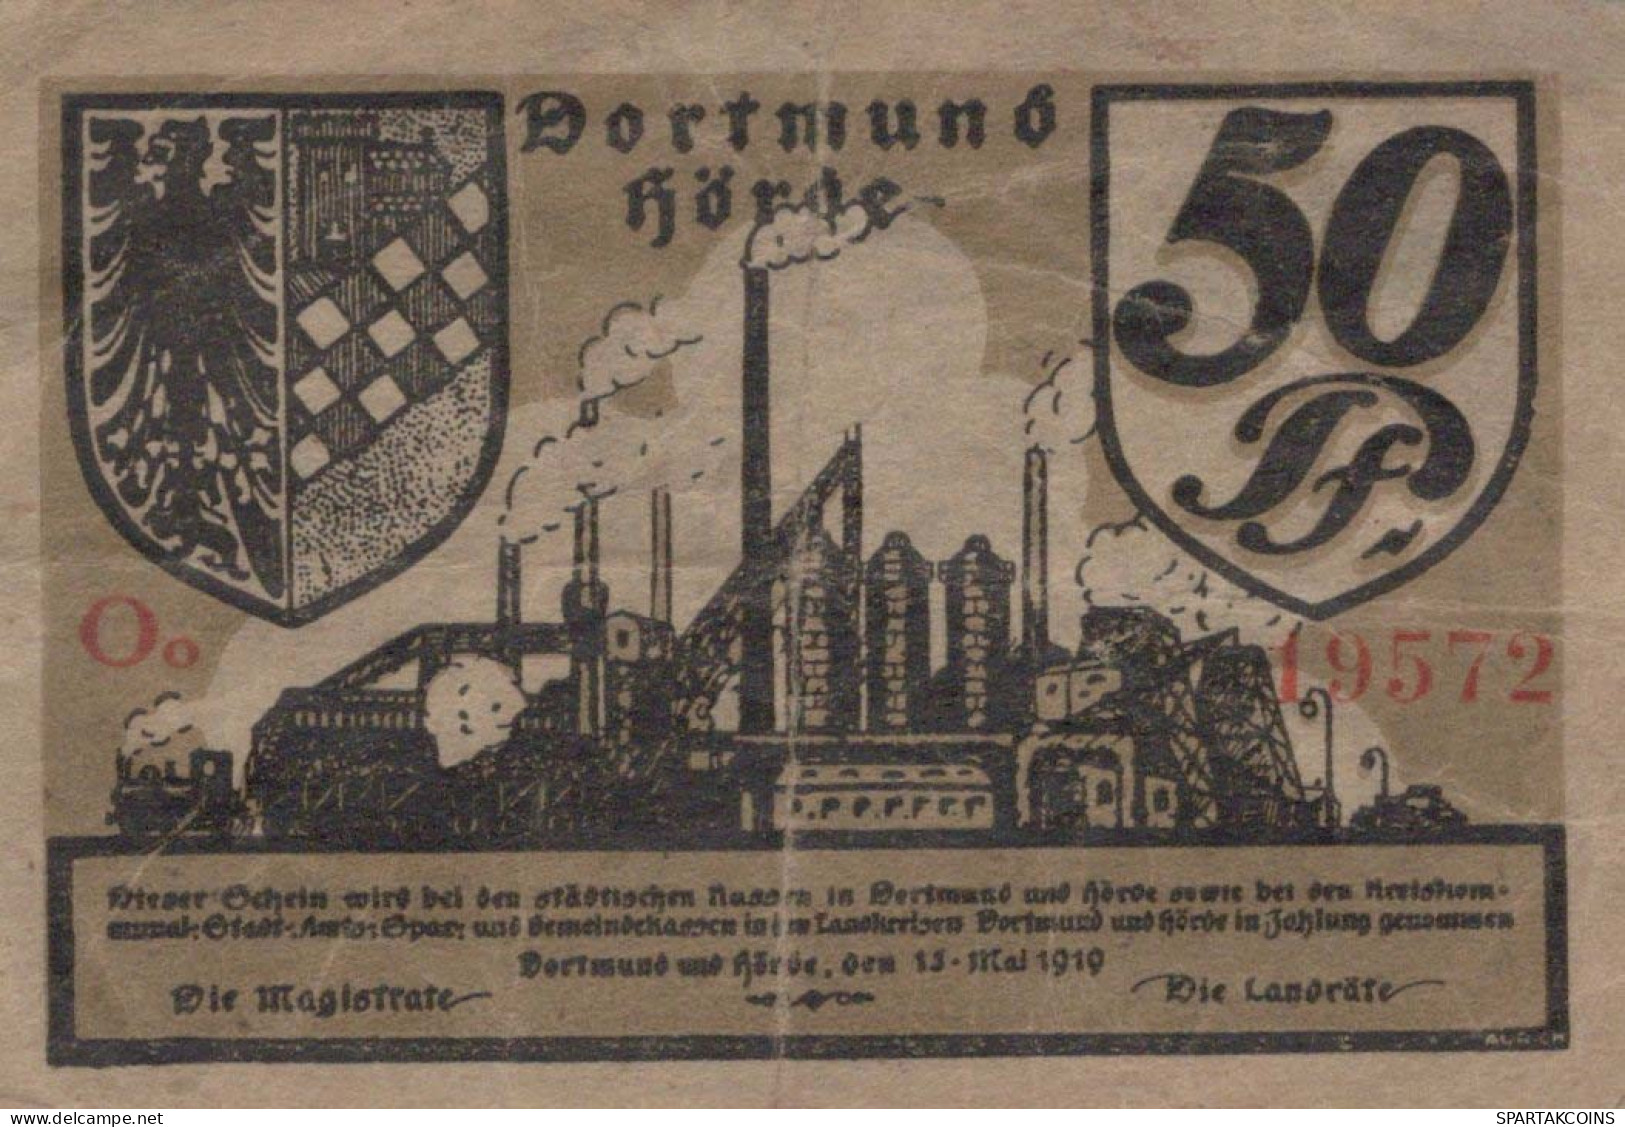 50 PFENNIG 1919 Stadt DORTMUND AND HoRDE Westphalia DEUTSCHLAND Notgeld #PG086 - [11] Emissions Locales